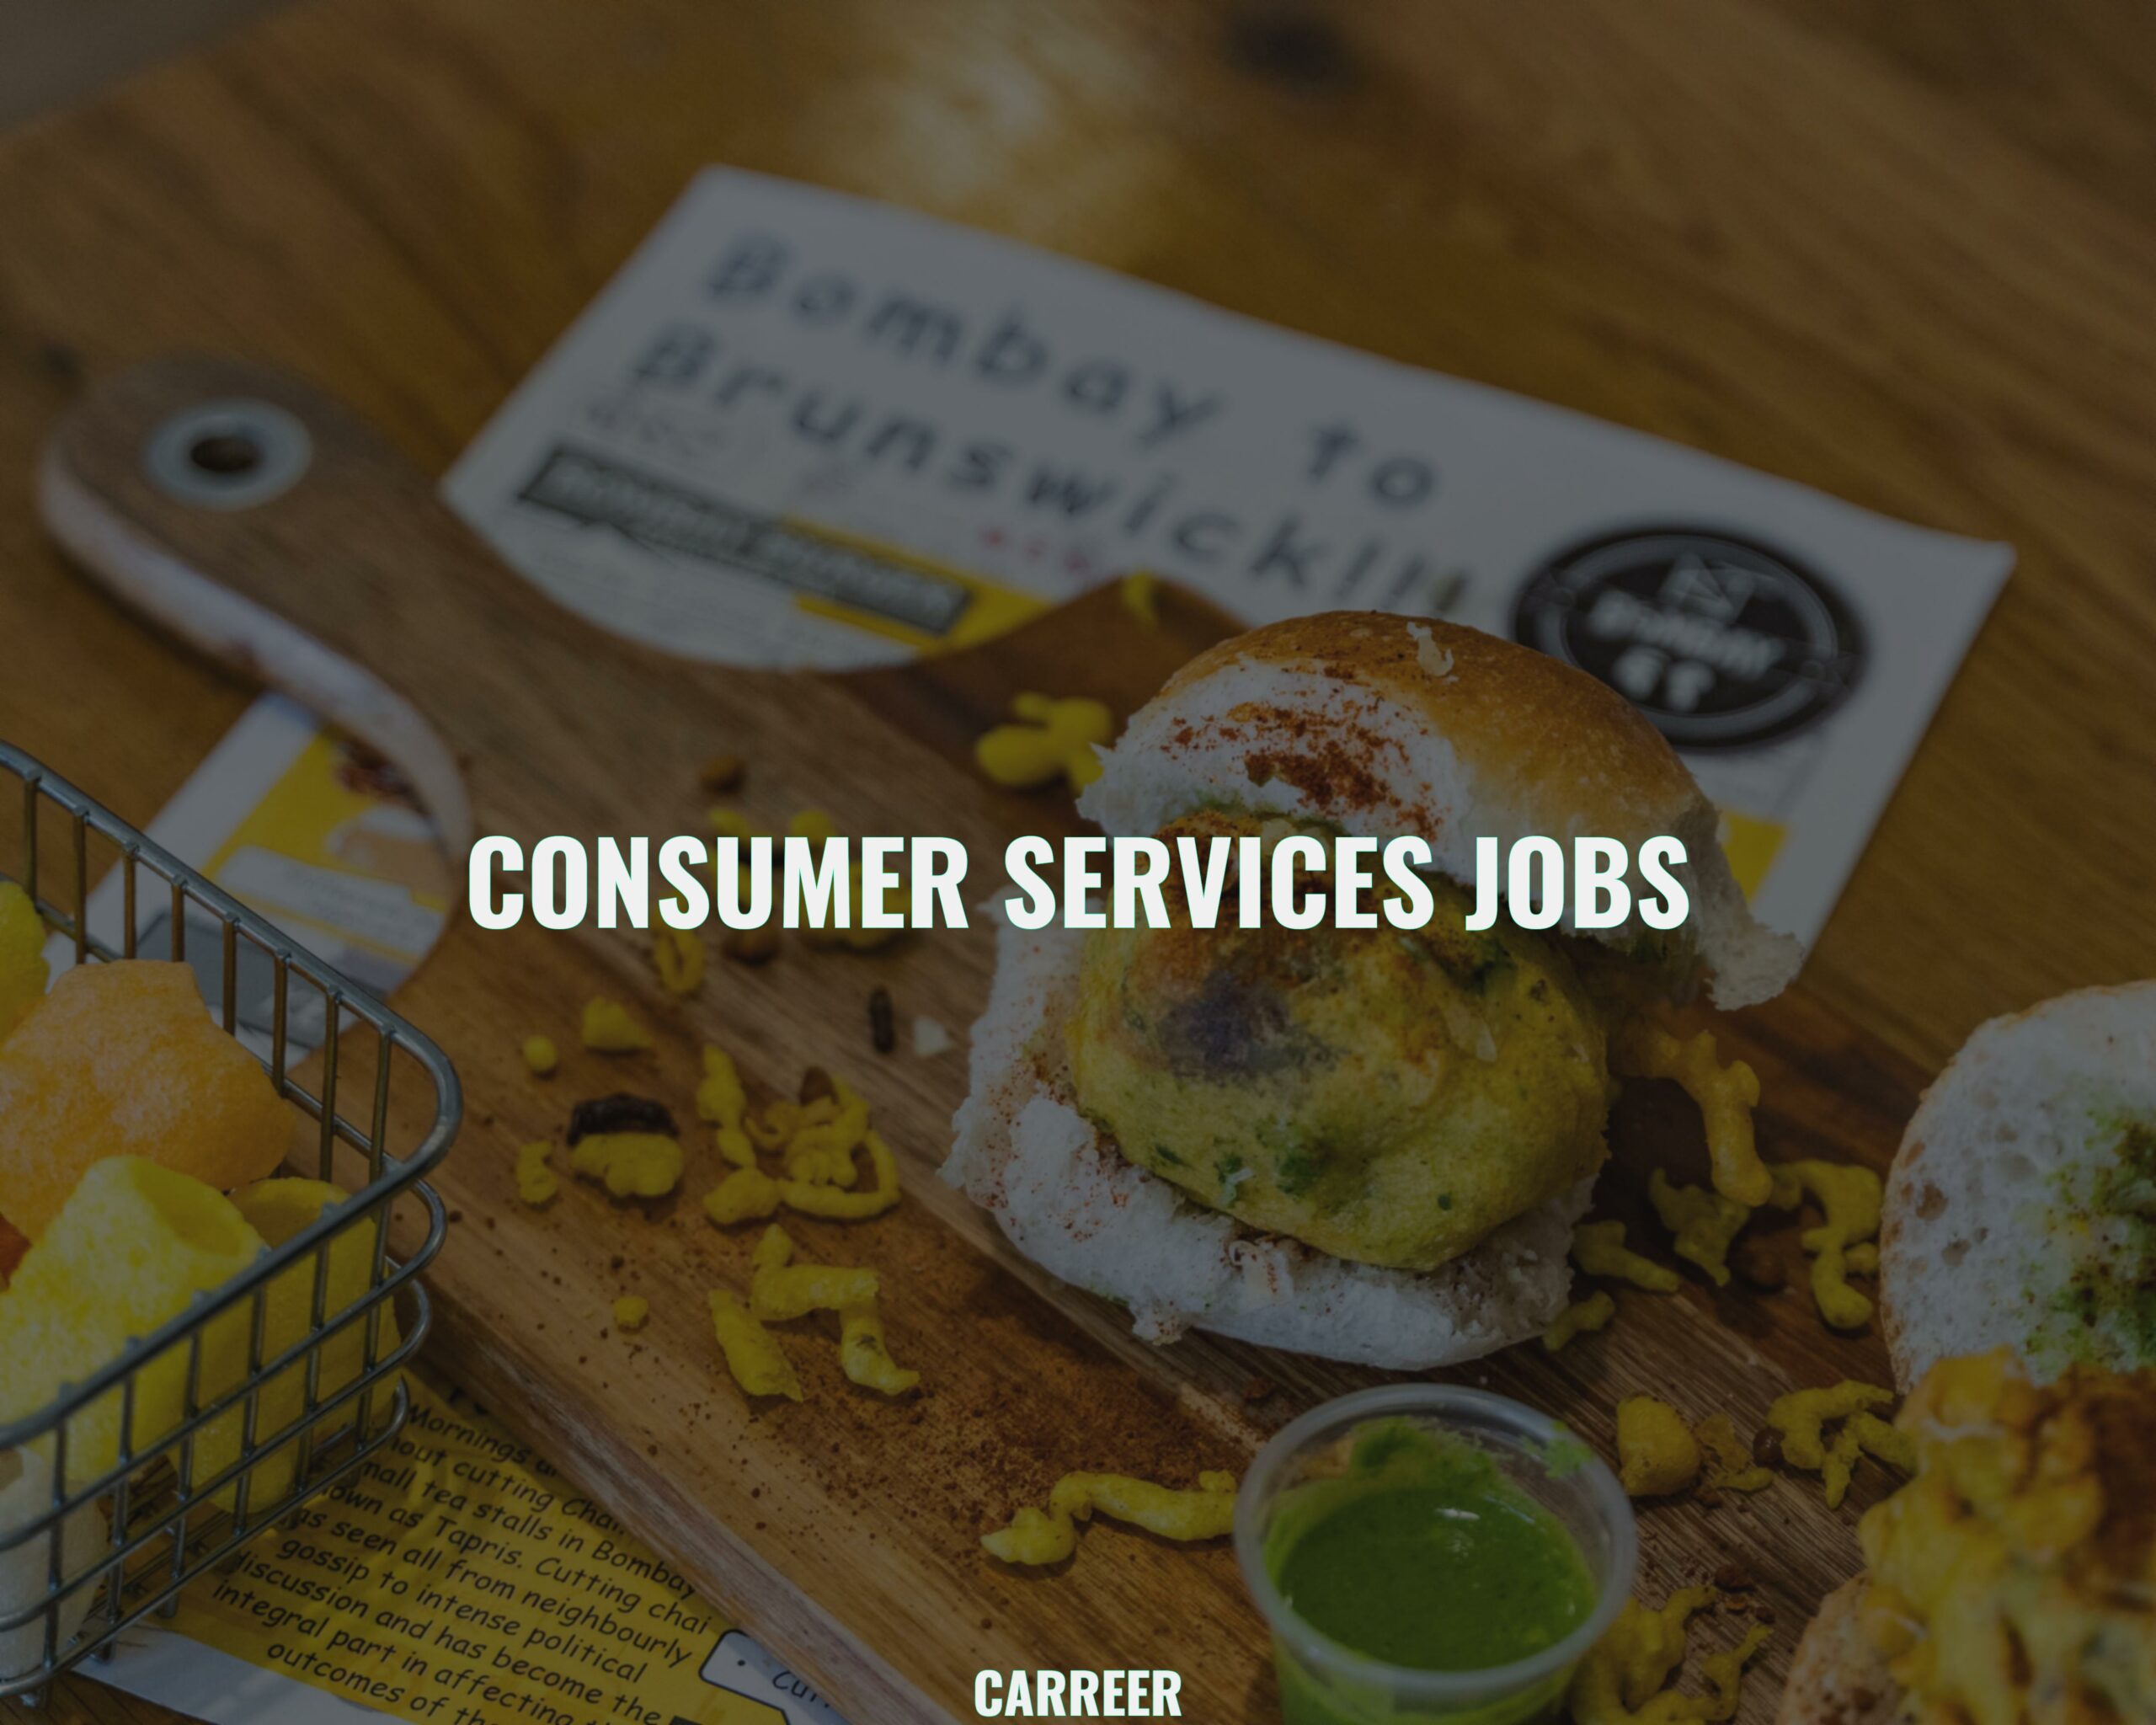 Consumer services jobs